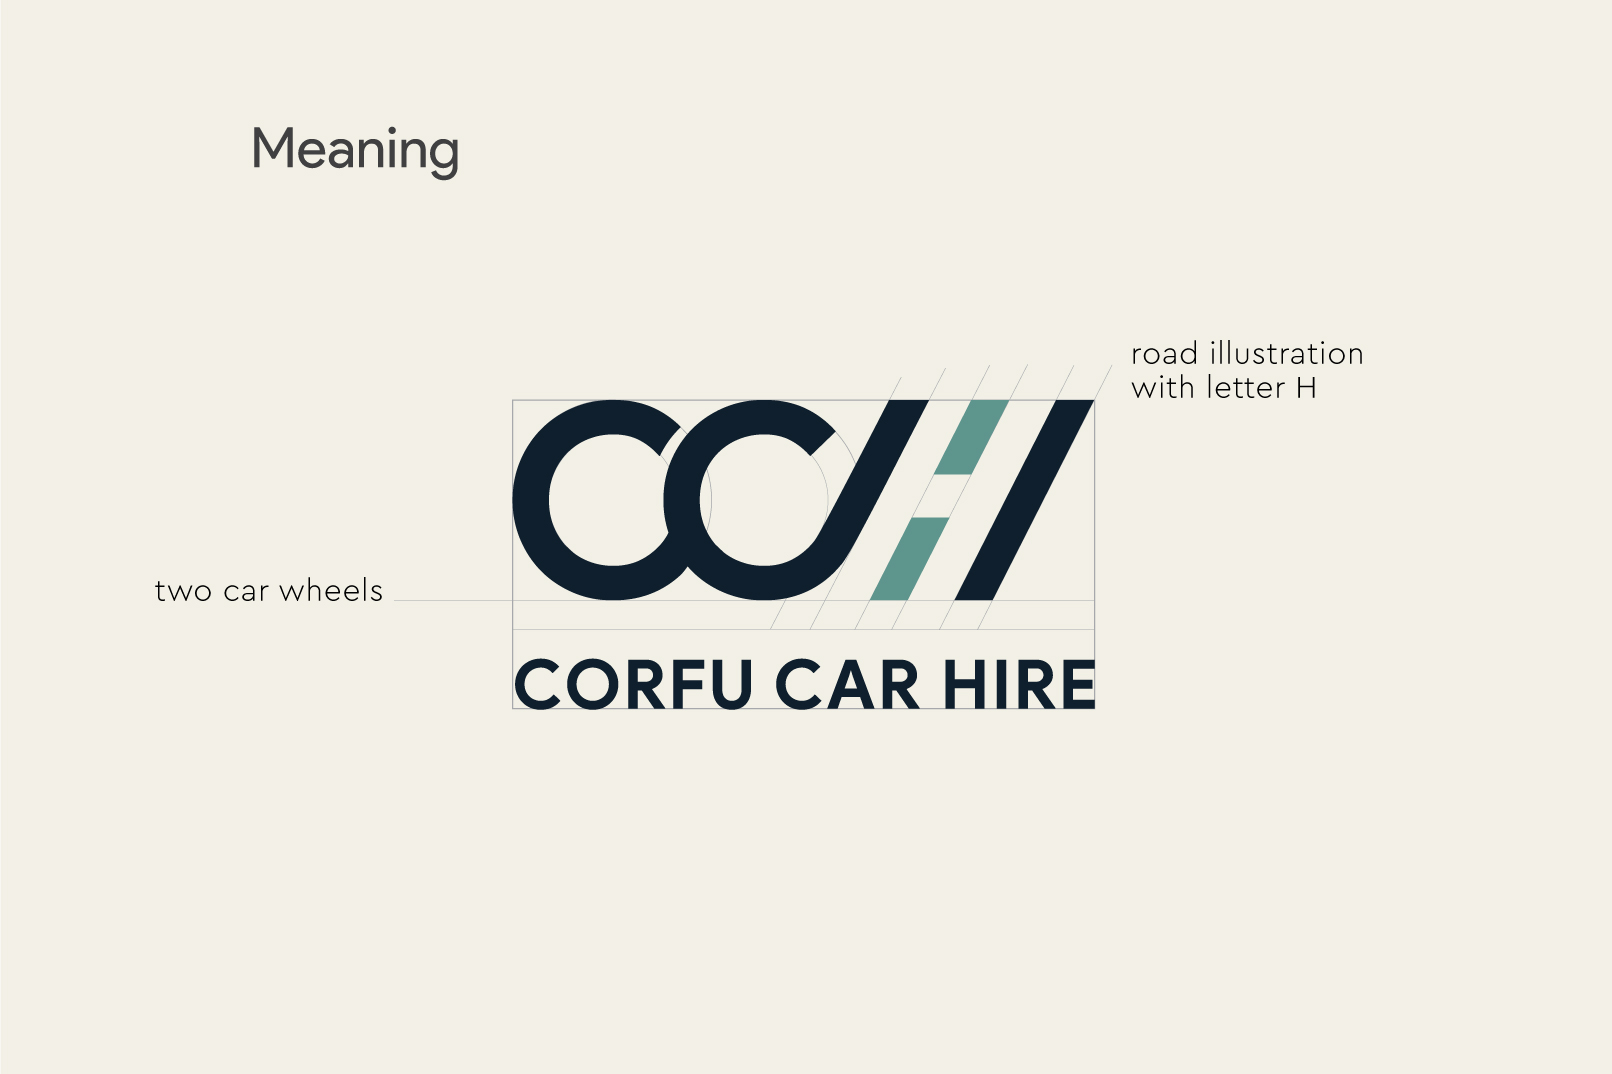 corfu car hire motivar projects logo description